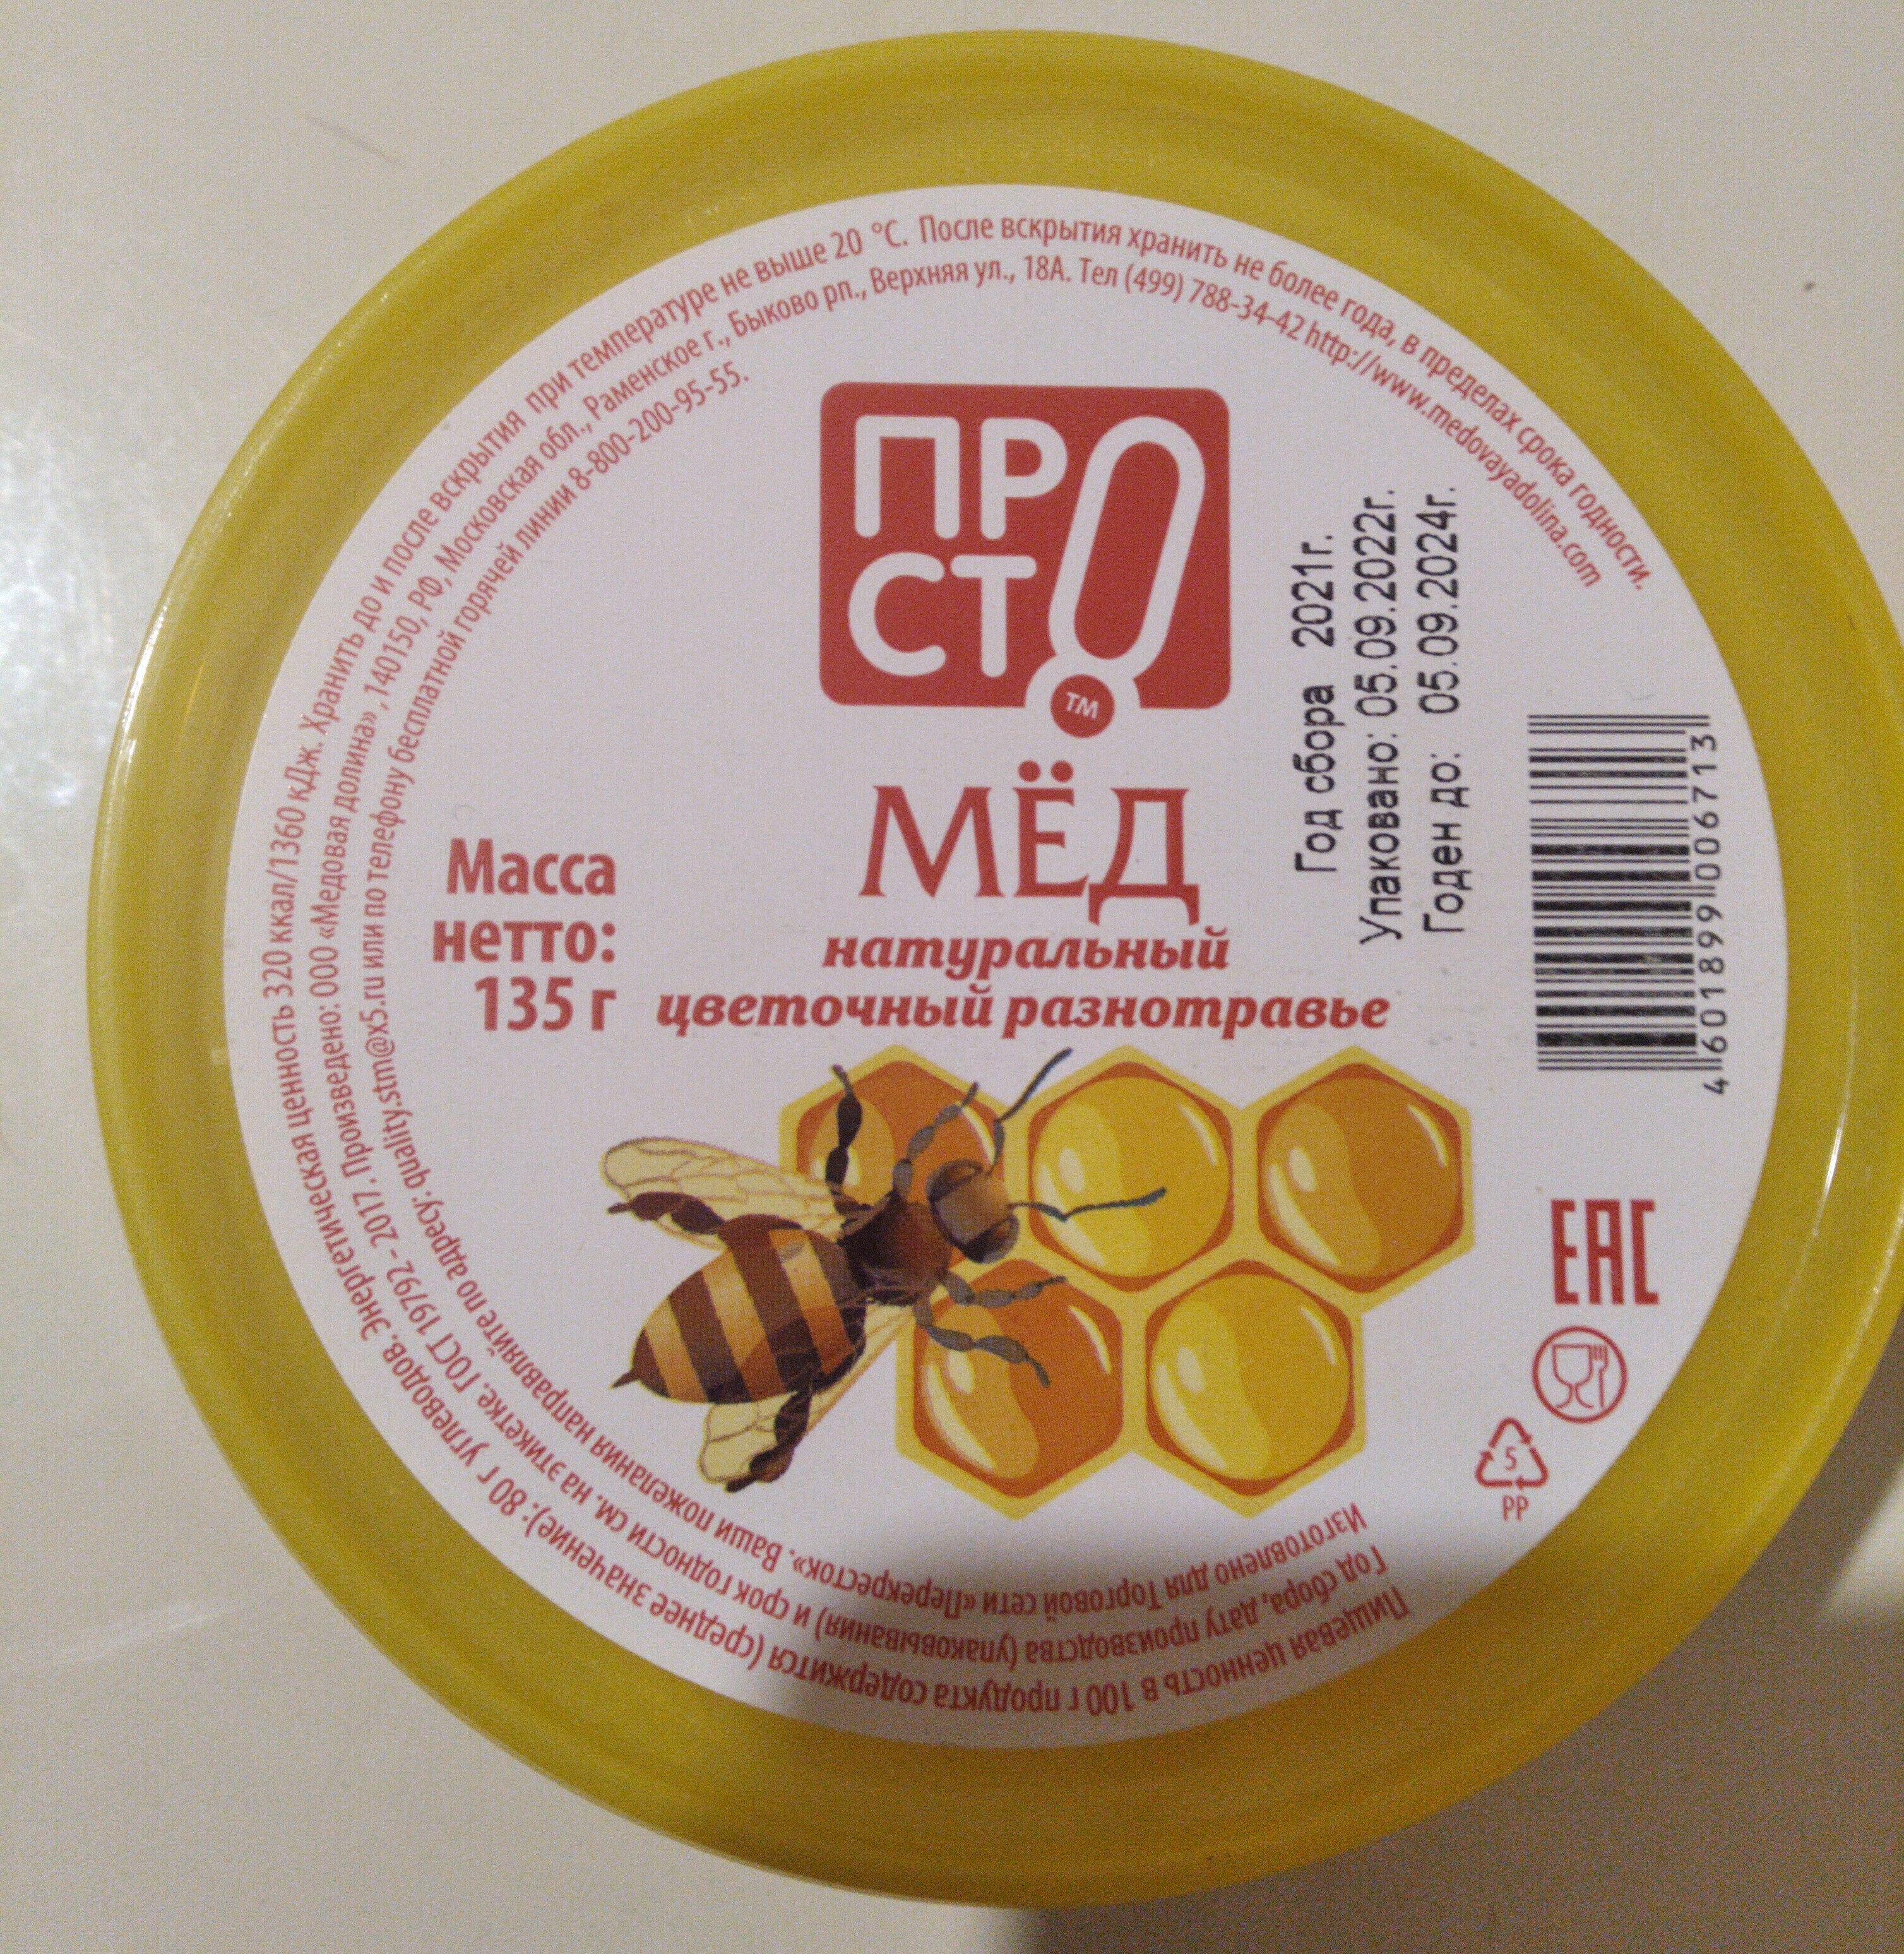 Мед цветочный разнотравье - Product